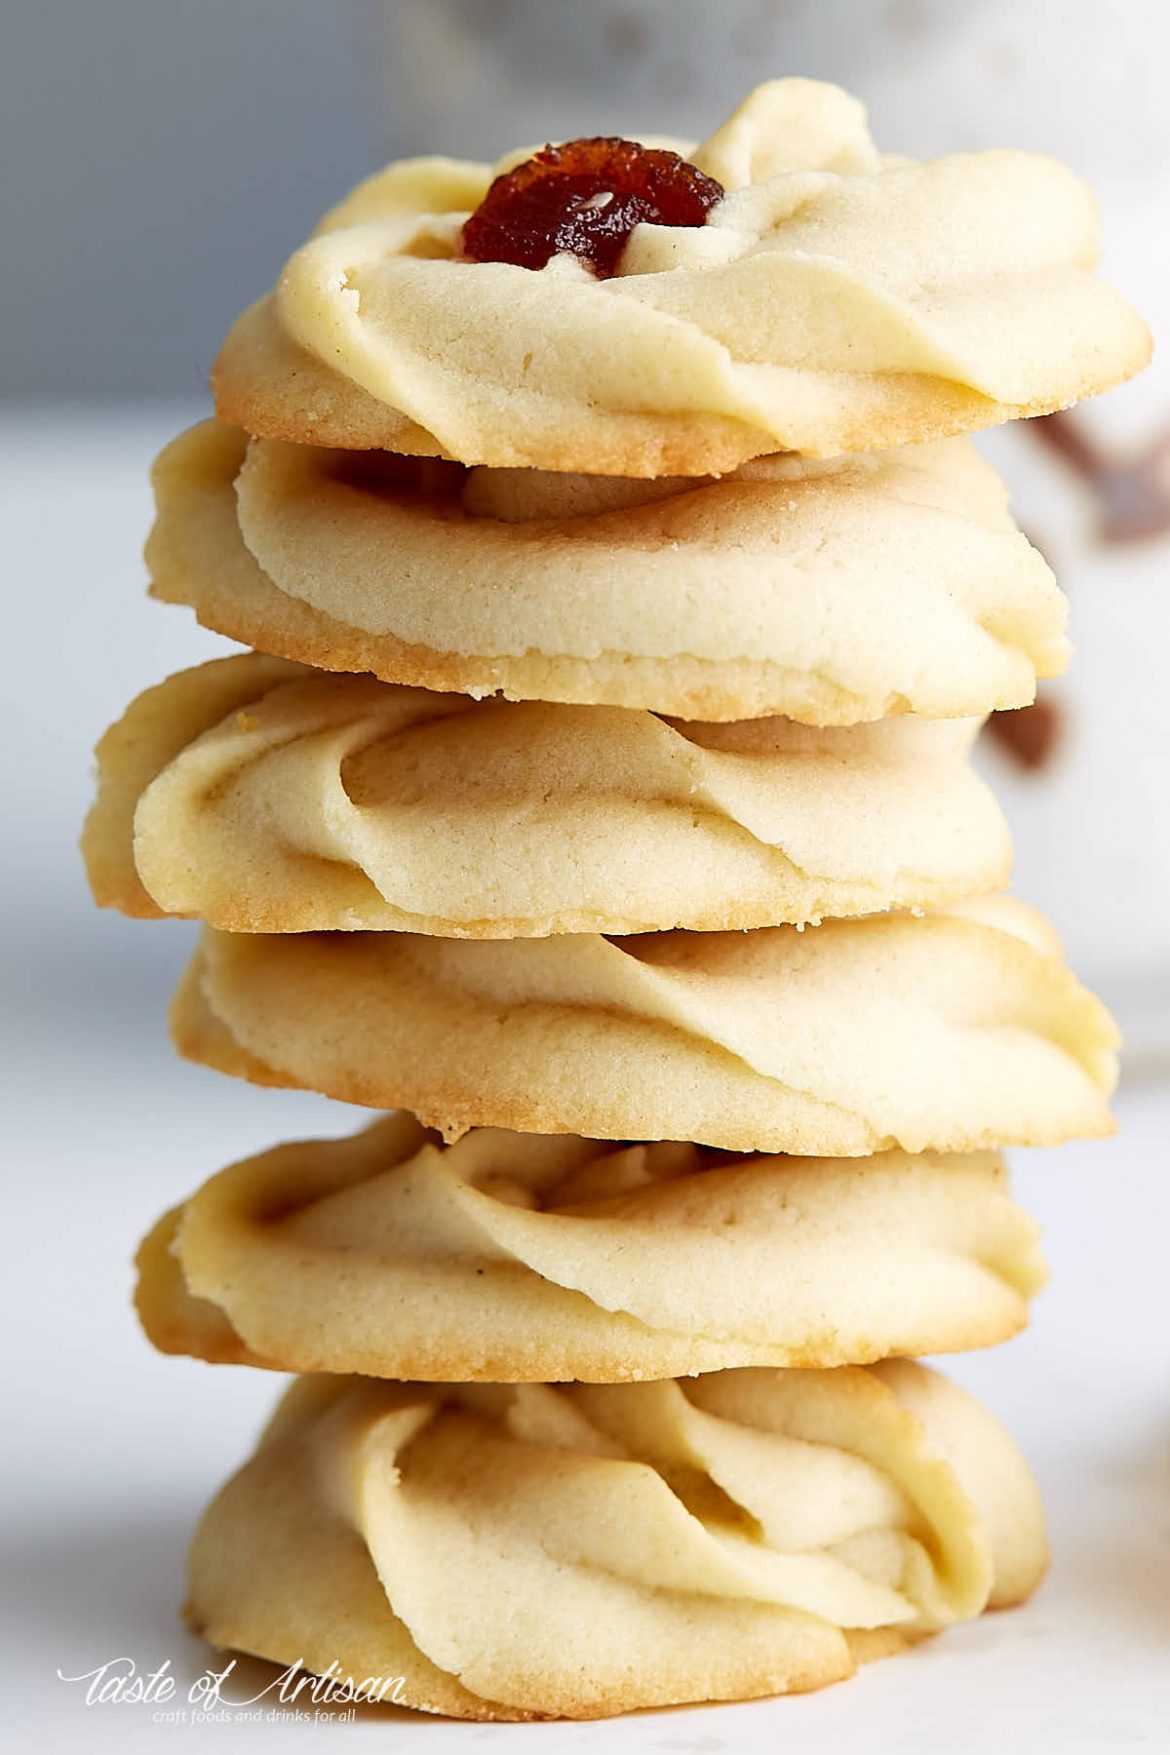 Shortbread Cookies with Jam - Taste of Artisan